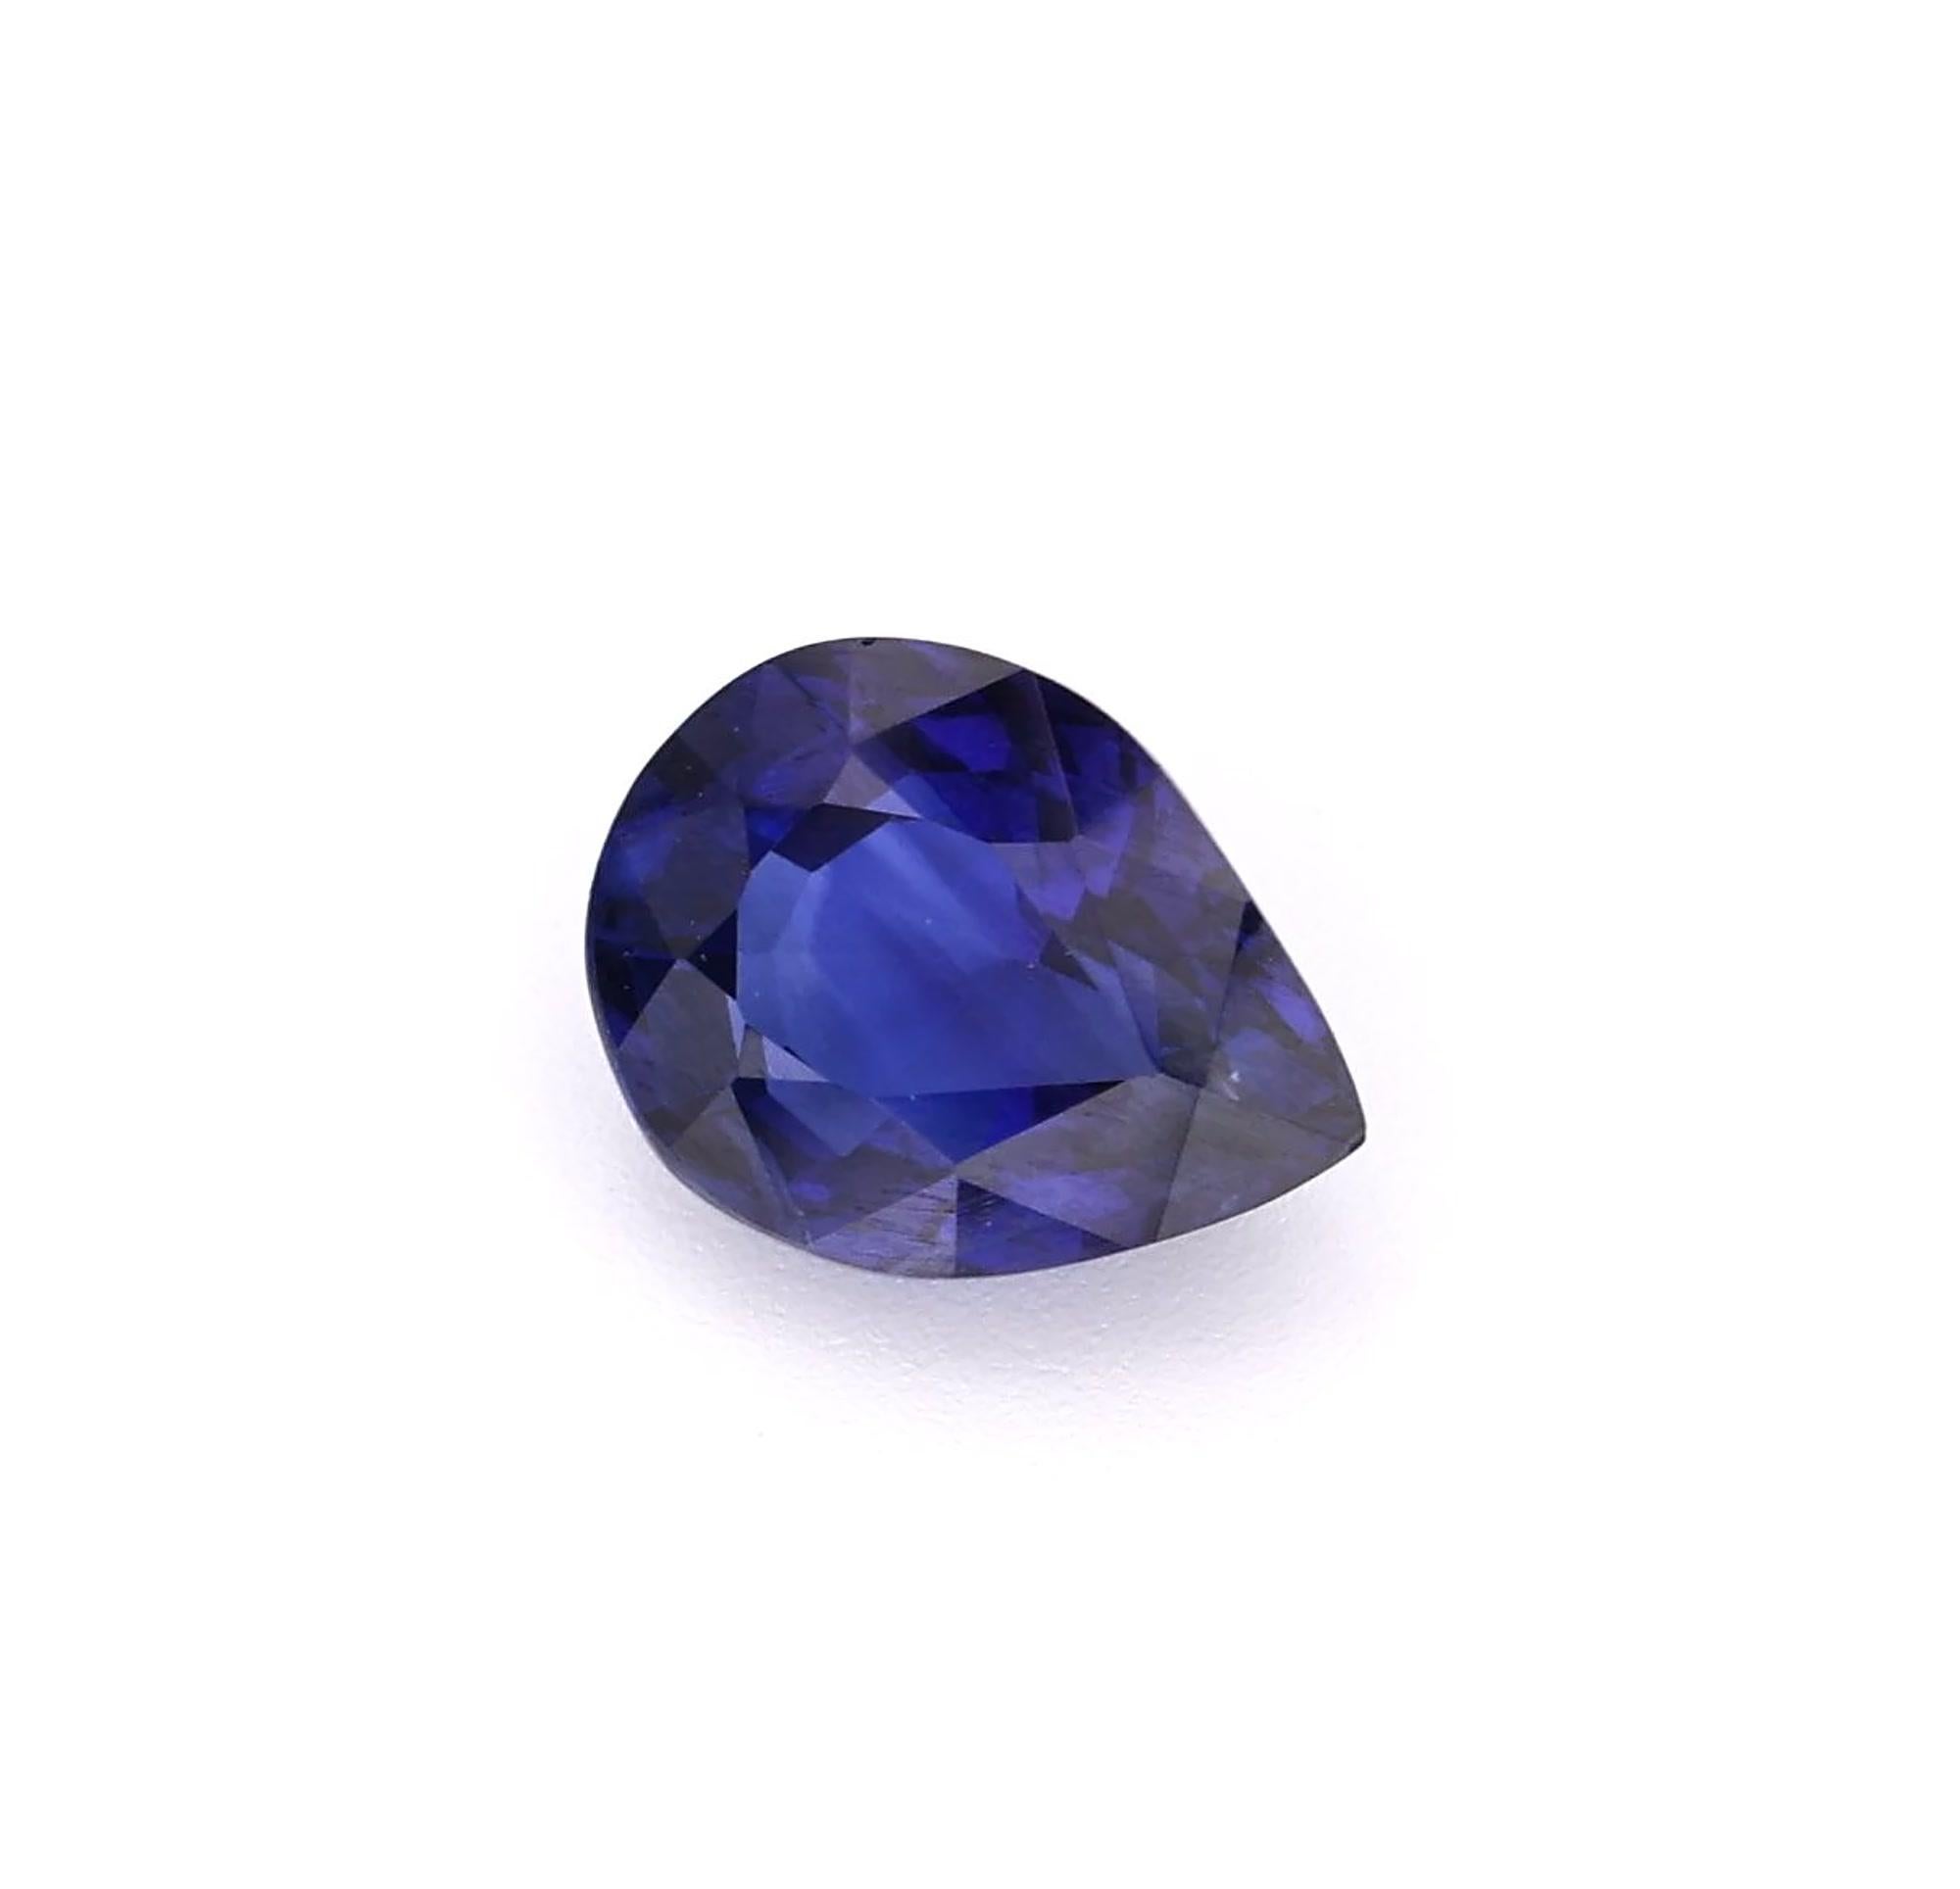 Saphir bleu naturel Couleur bleu royal Forme de poire. Cette pierre précieuse exquise provient de Ceylan (Sri Lanka), connu pour produire des pierres d'une qualité exceptionnelle. Avec sa clarté interne irréprochable.

• Variété : Blue Sapphire 
•